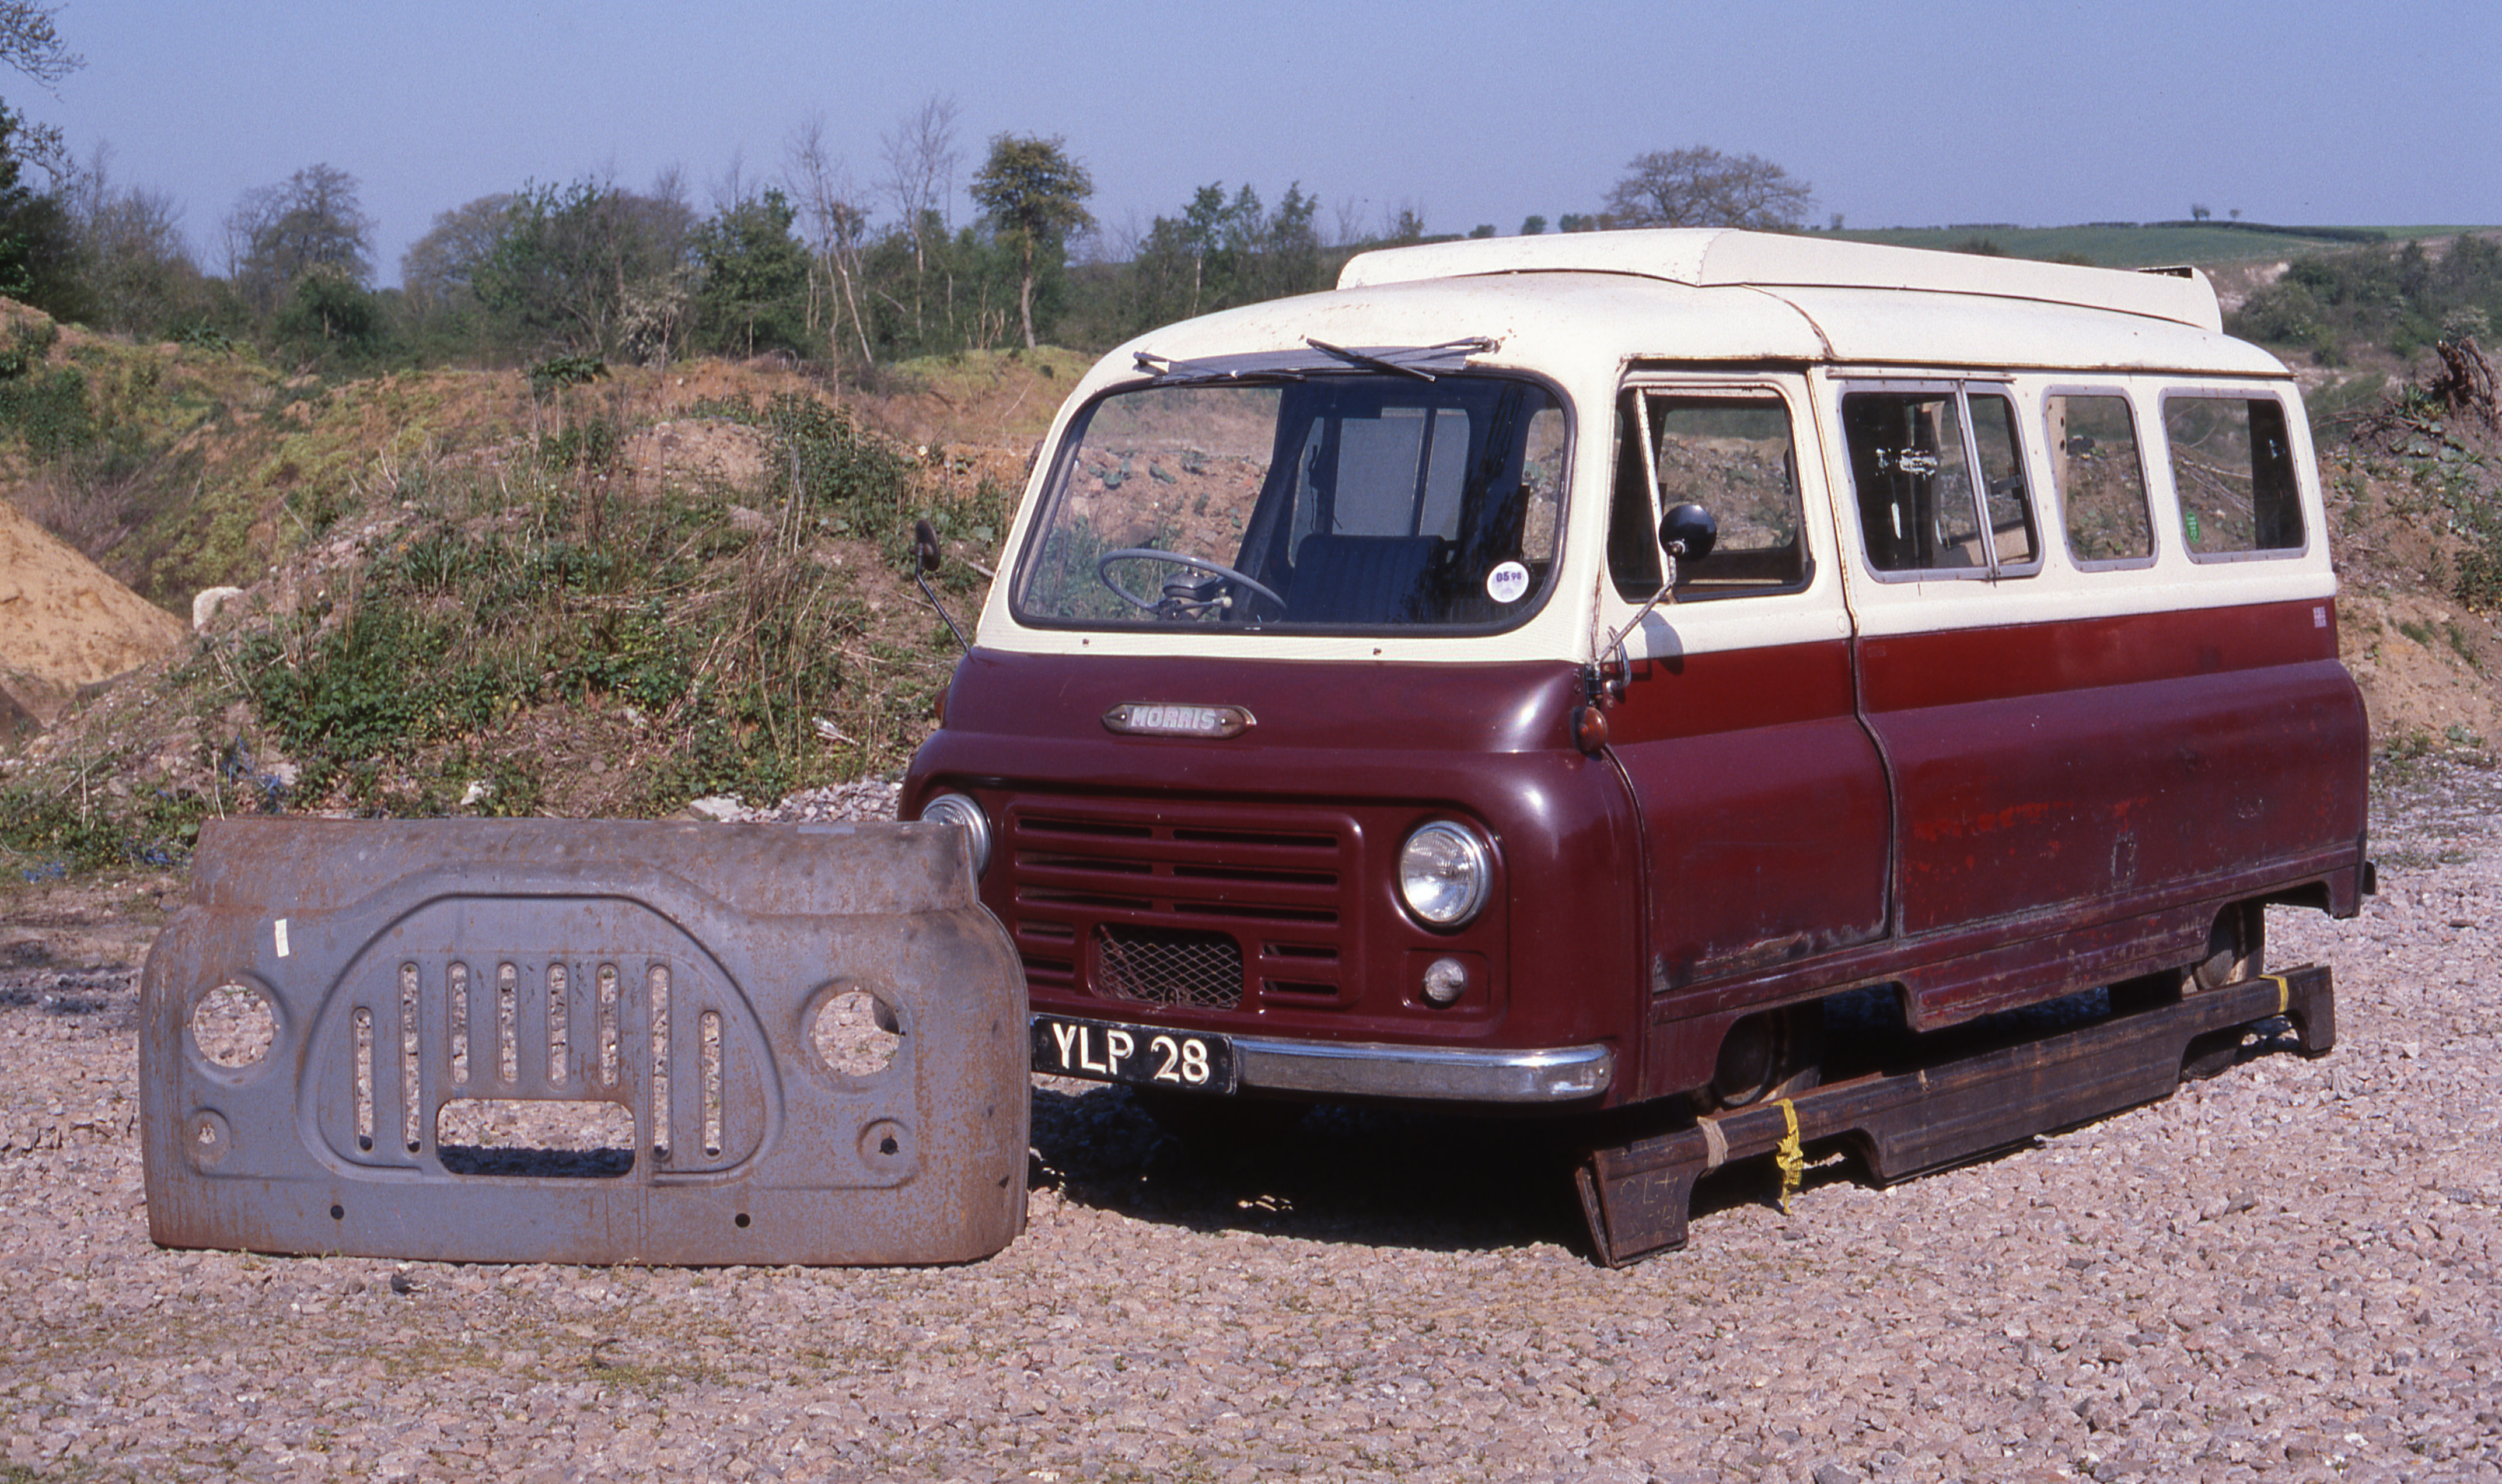 Morris J2 van with Calthorpe Home Cruiser camper van conversion. - Image 7